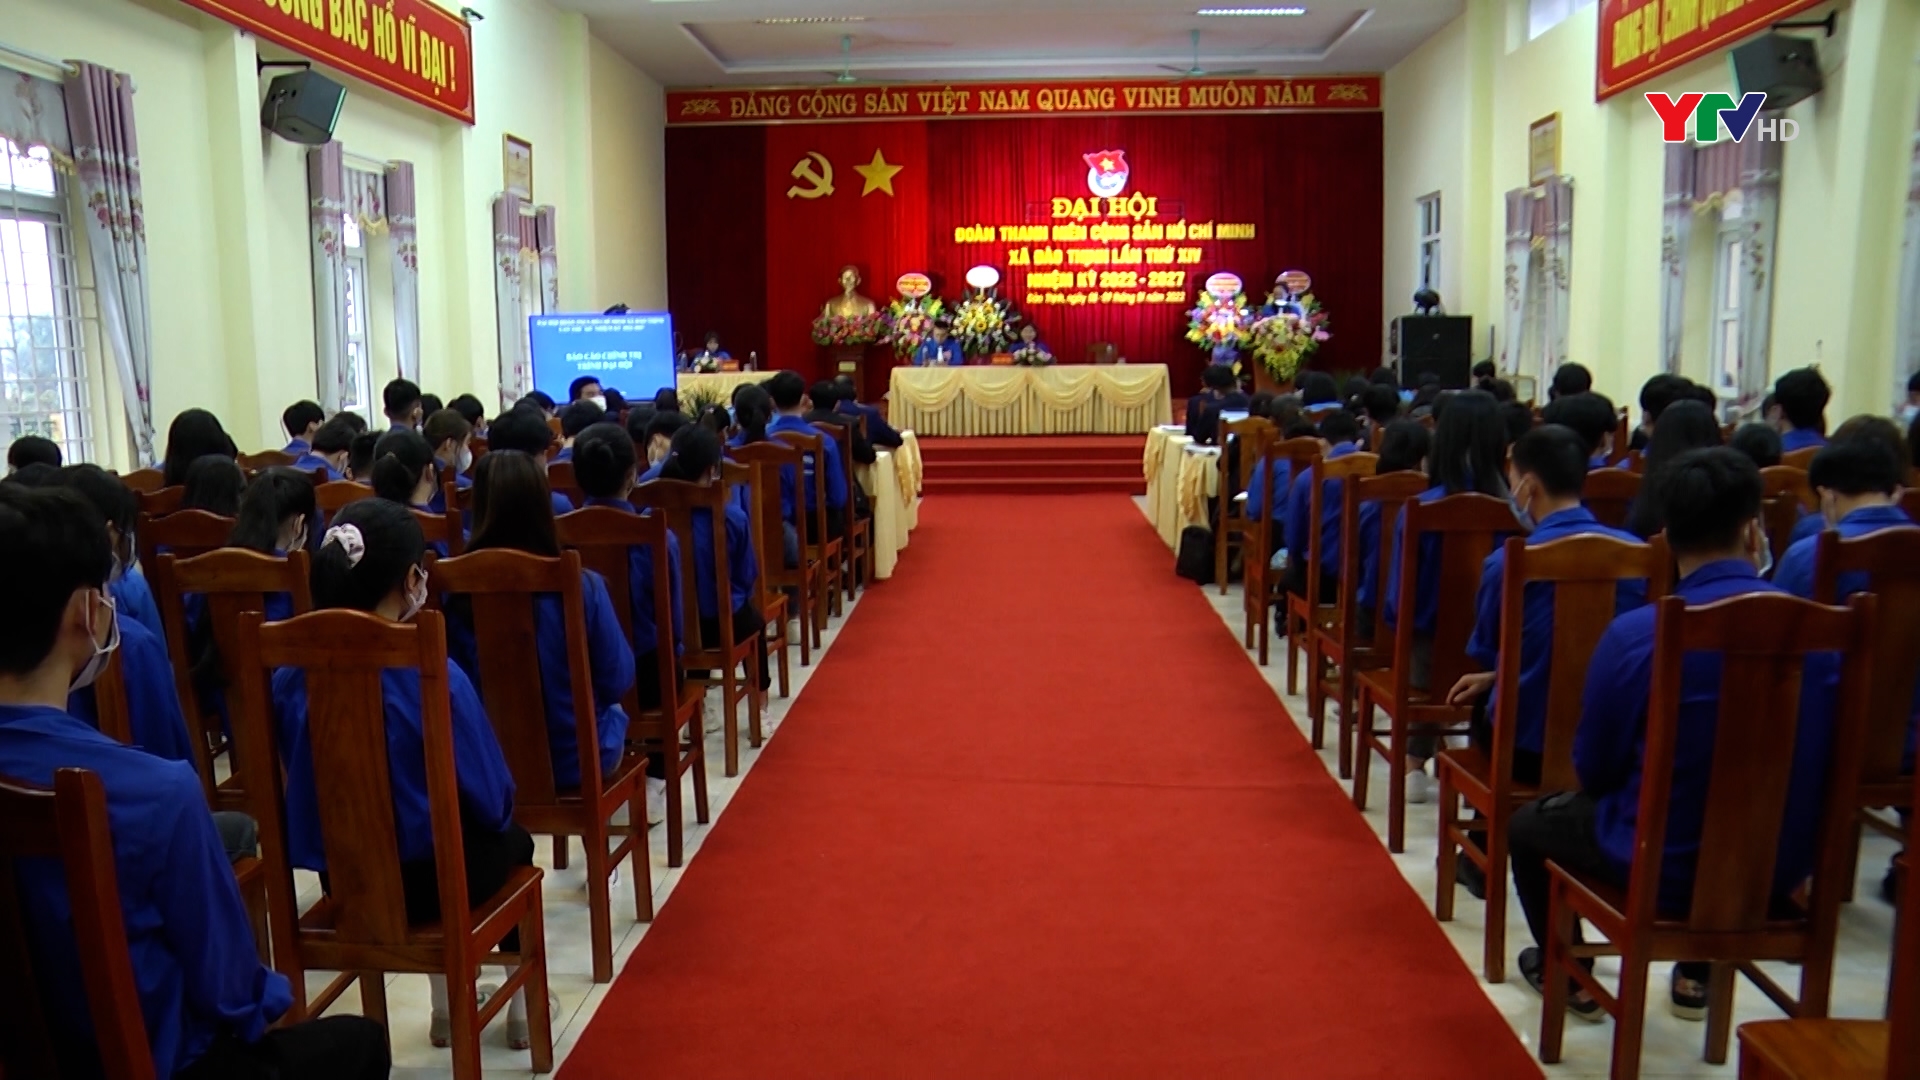 Đại hội điểm Đoàn thanh niên xã Đào Thịnh, huyện Trấn Yên